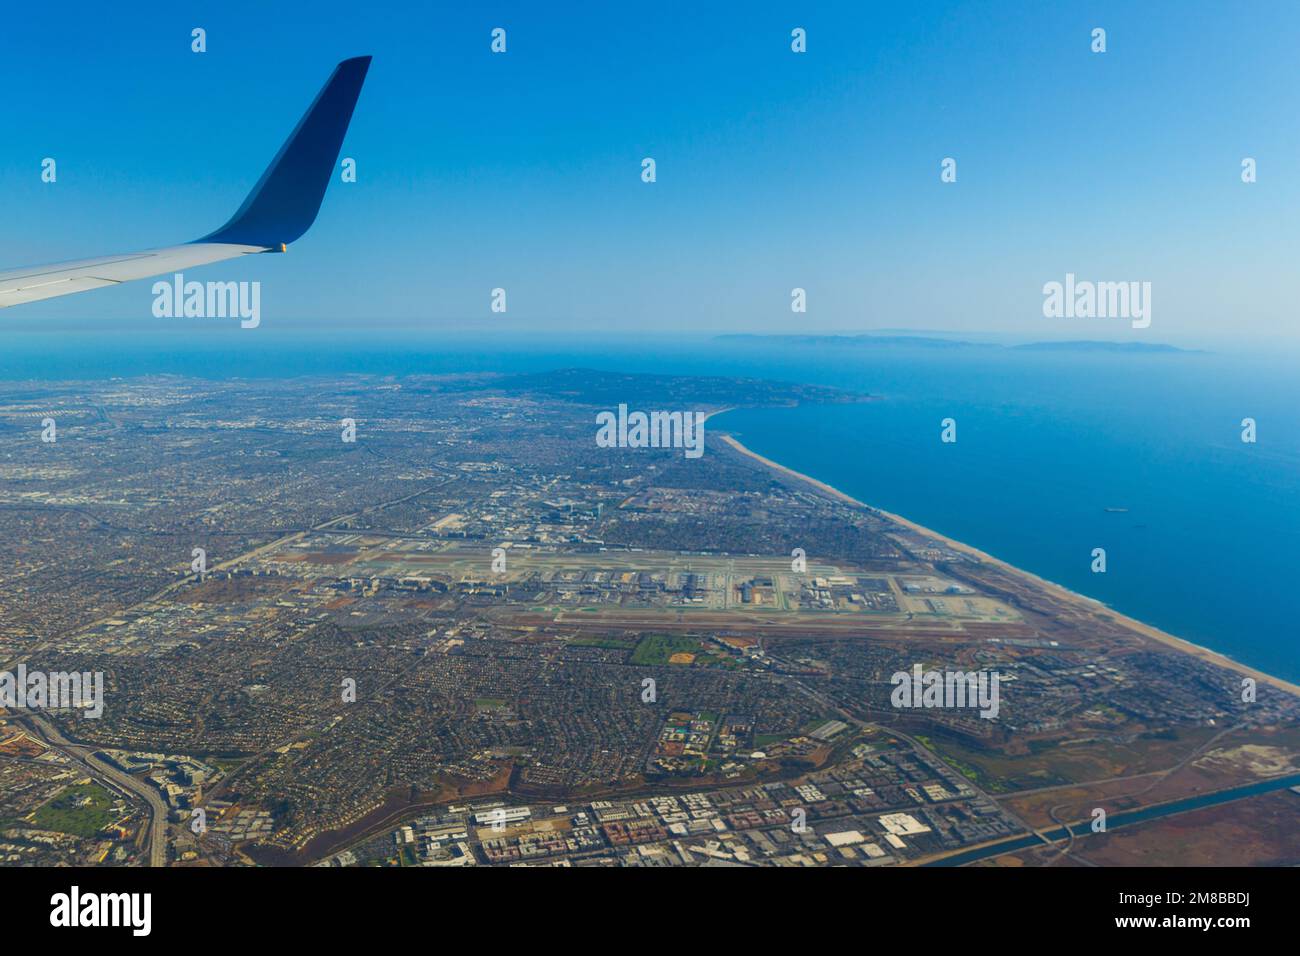 Los Angeles und der Flughafen LAX in Kalifornien, USA, aus der Vogelperspektive von einem kommerziellen Passagierjet aus gesehen. Stockfoto